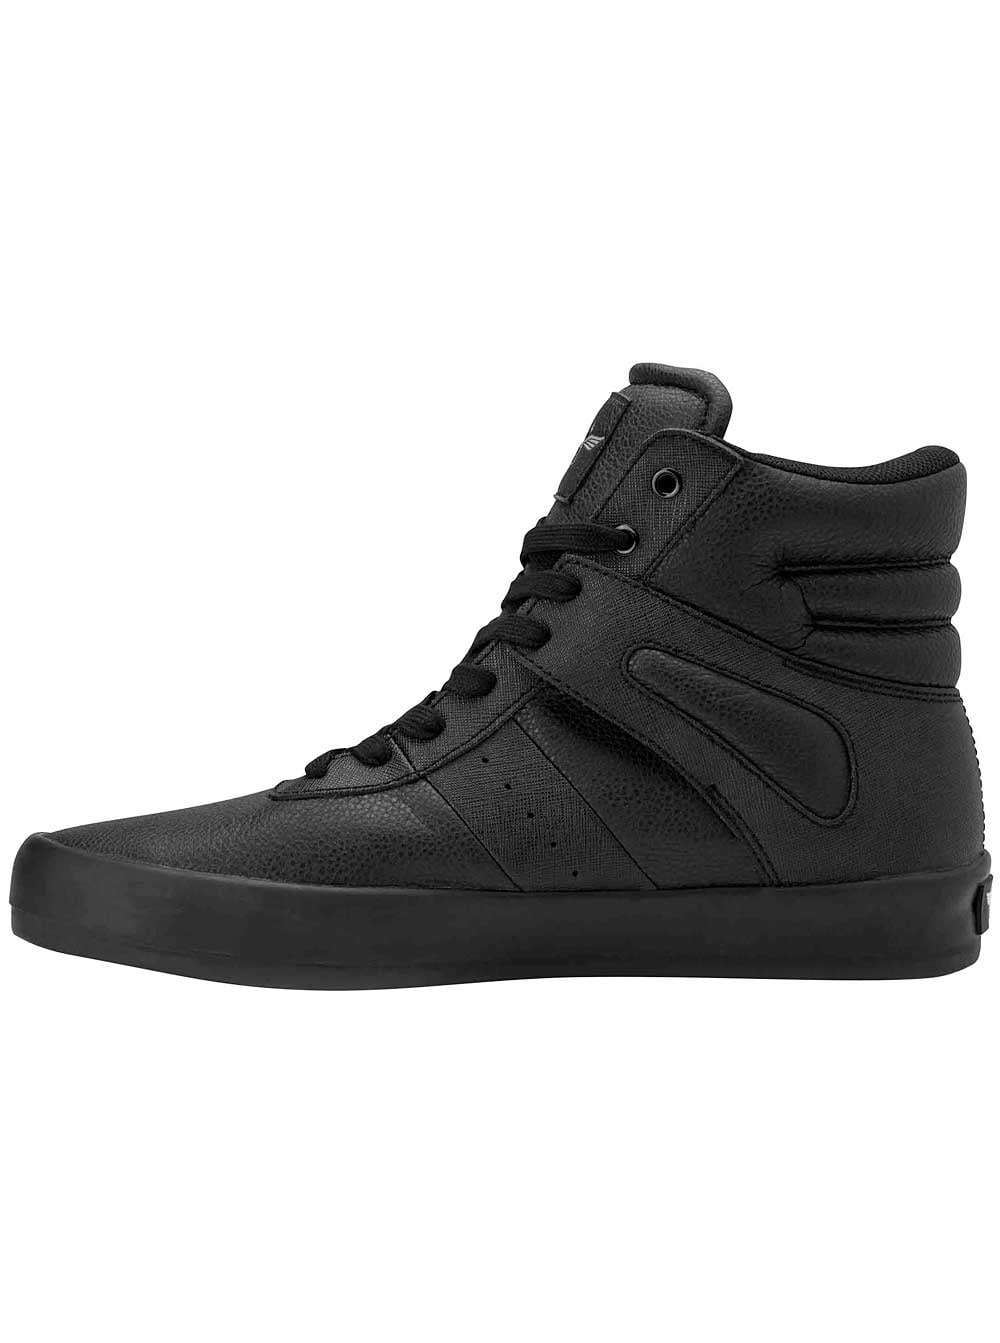 Creative Recreation Moretti Sneakers in Black - Walmart.com